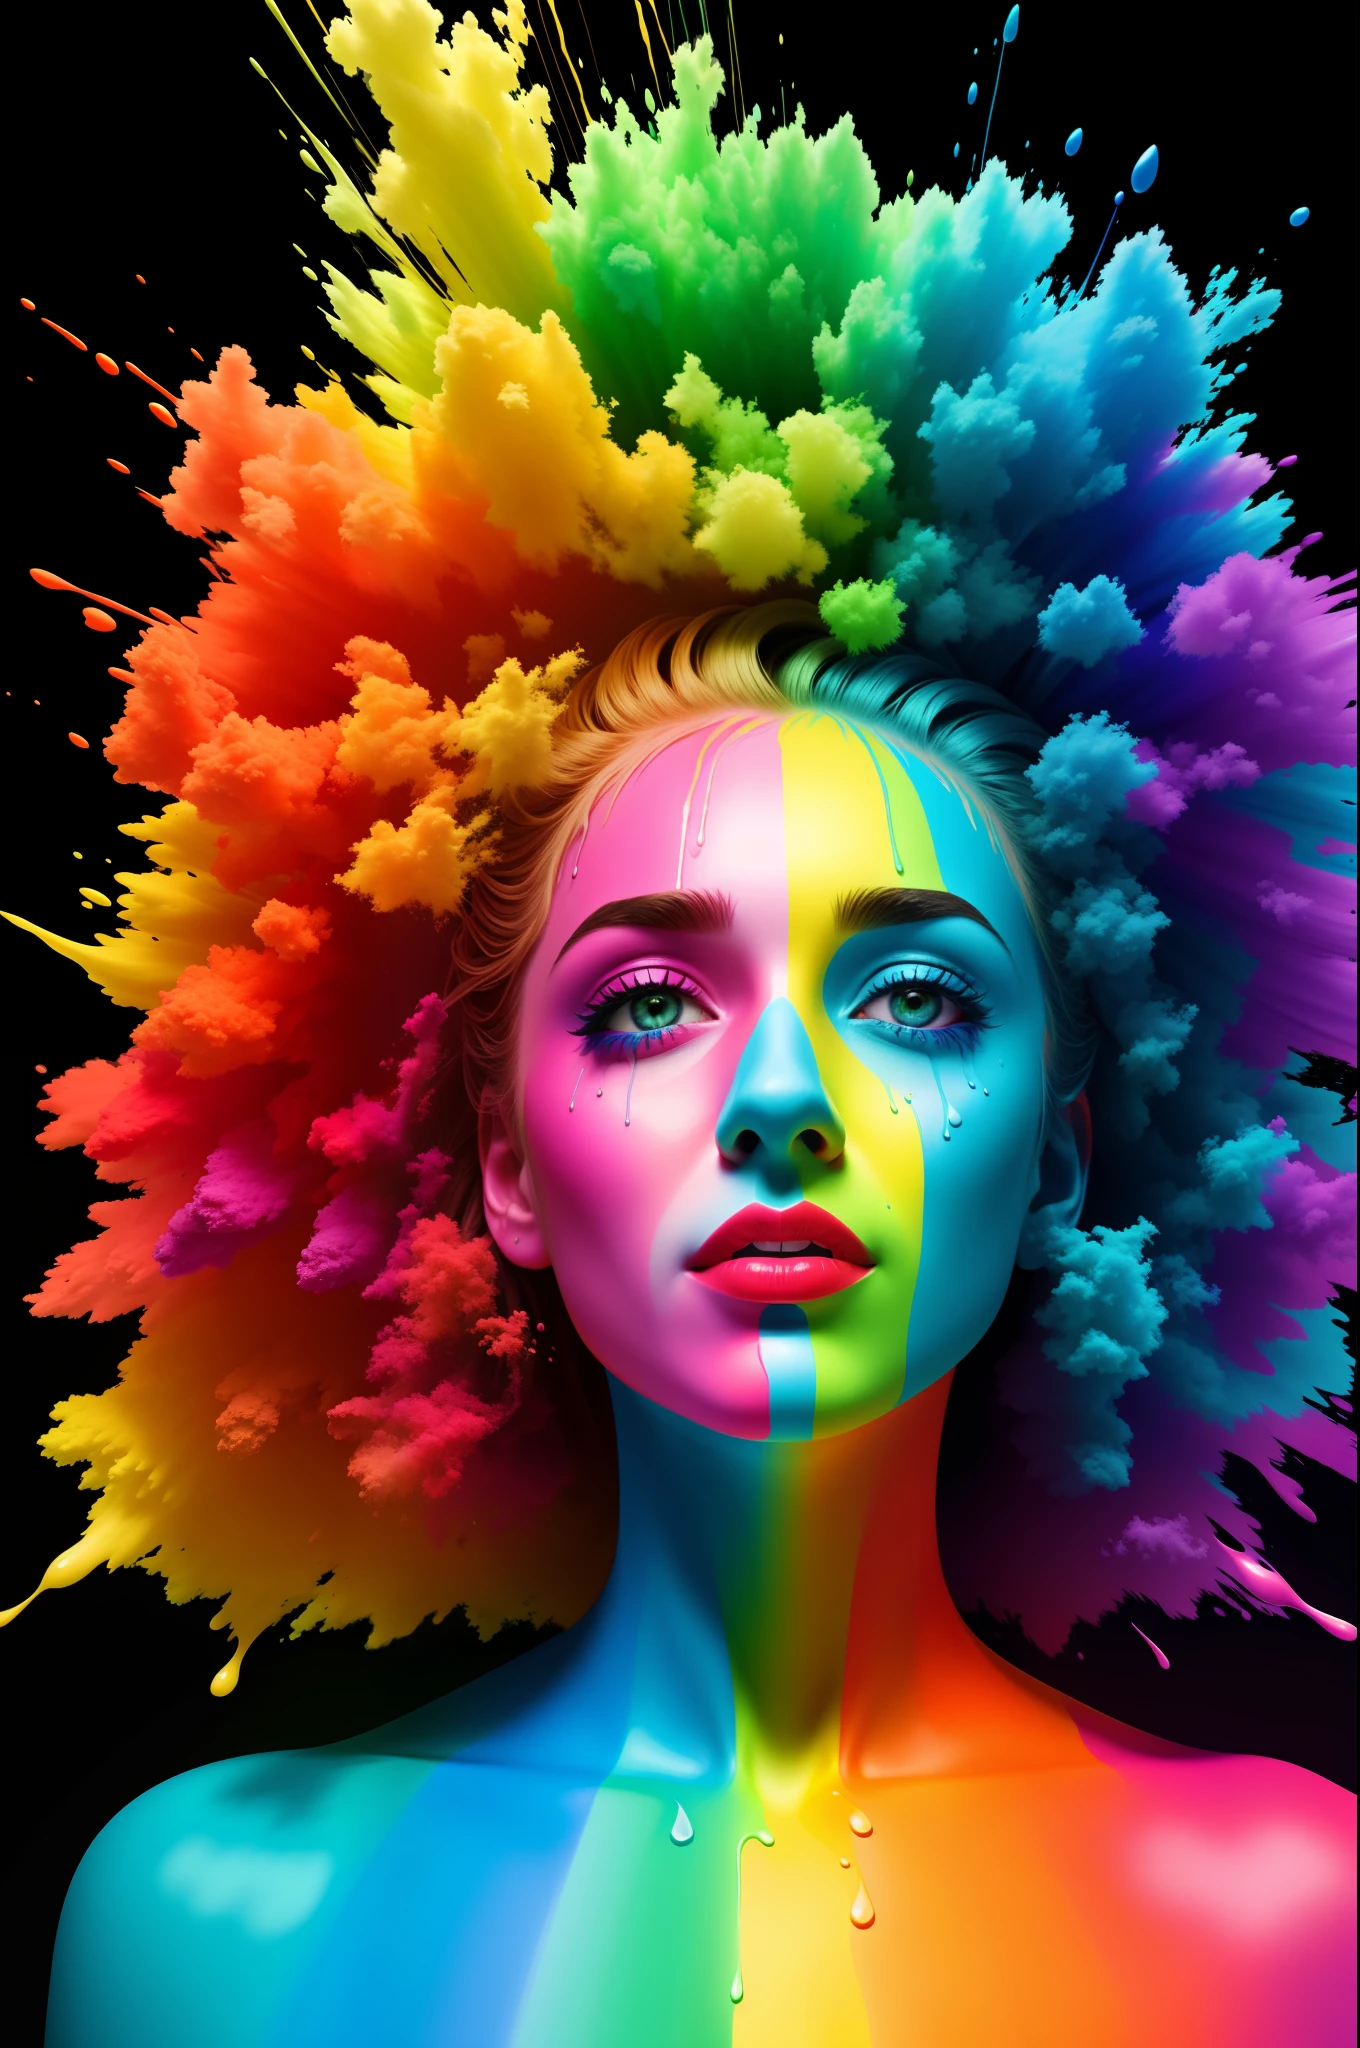 "Eu não vou passar minha vida sendo uma cor" manchado com tinta de cores diferentes do arco-íris, foto hiper real, técnica de gotejamento, discord pfp, Cor de 10 bits, hdr, 8K